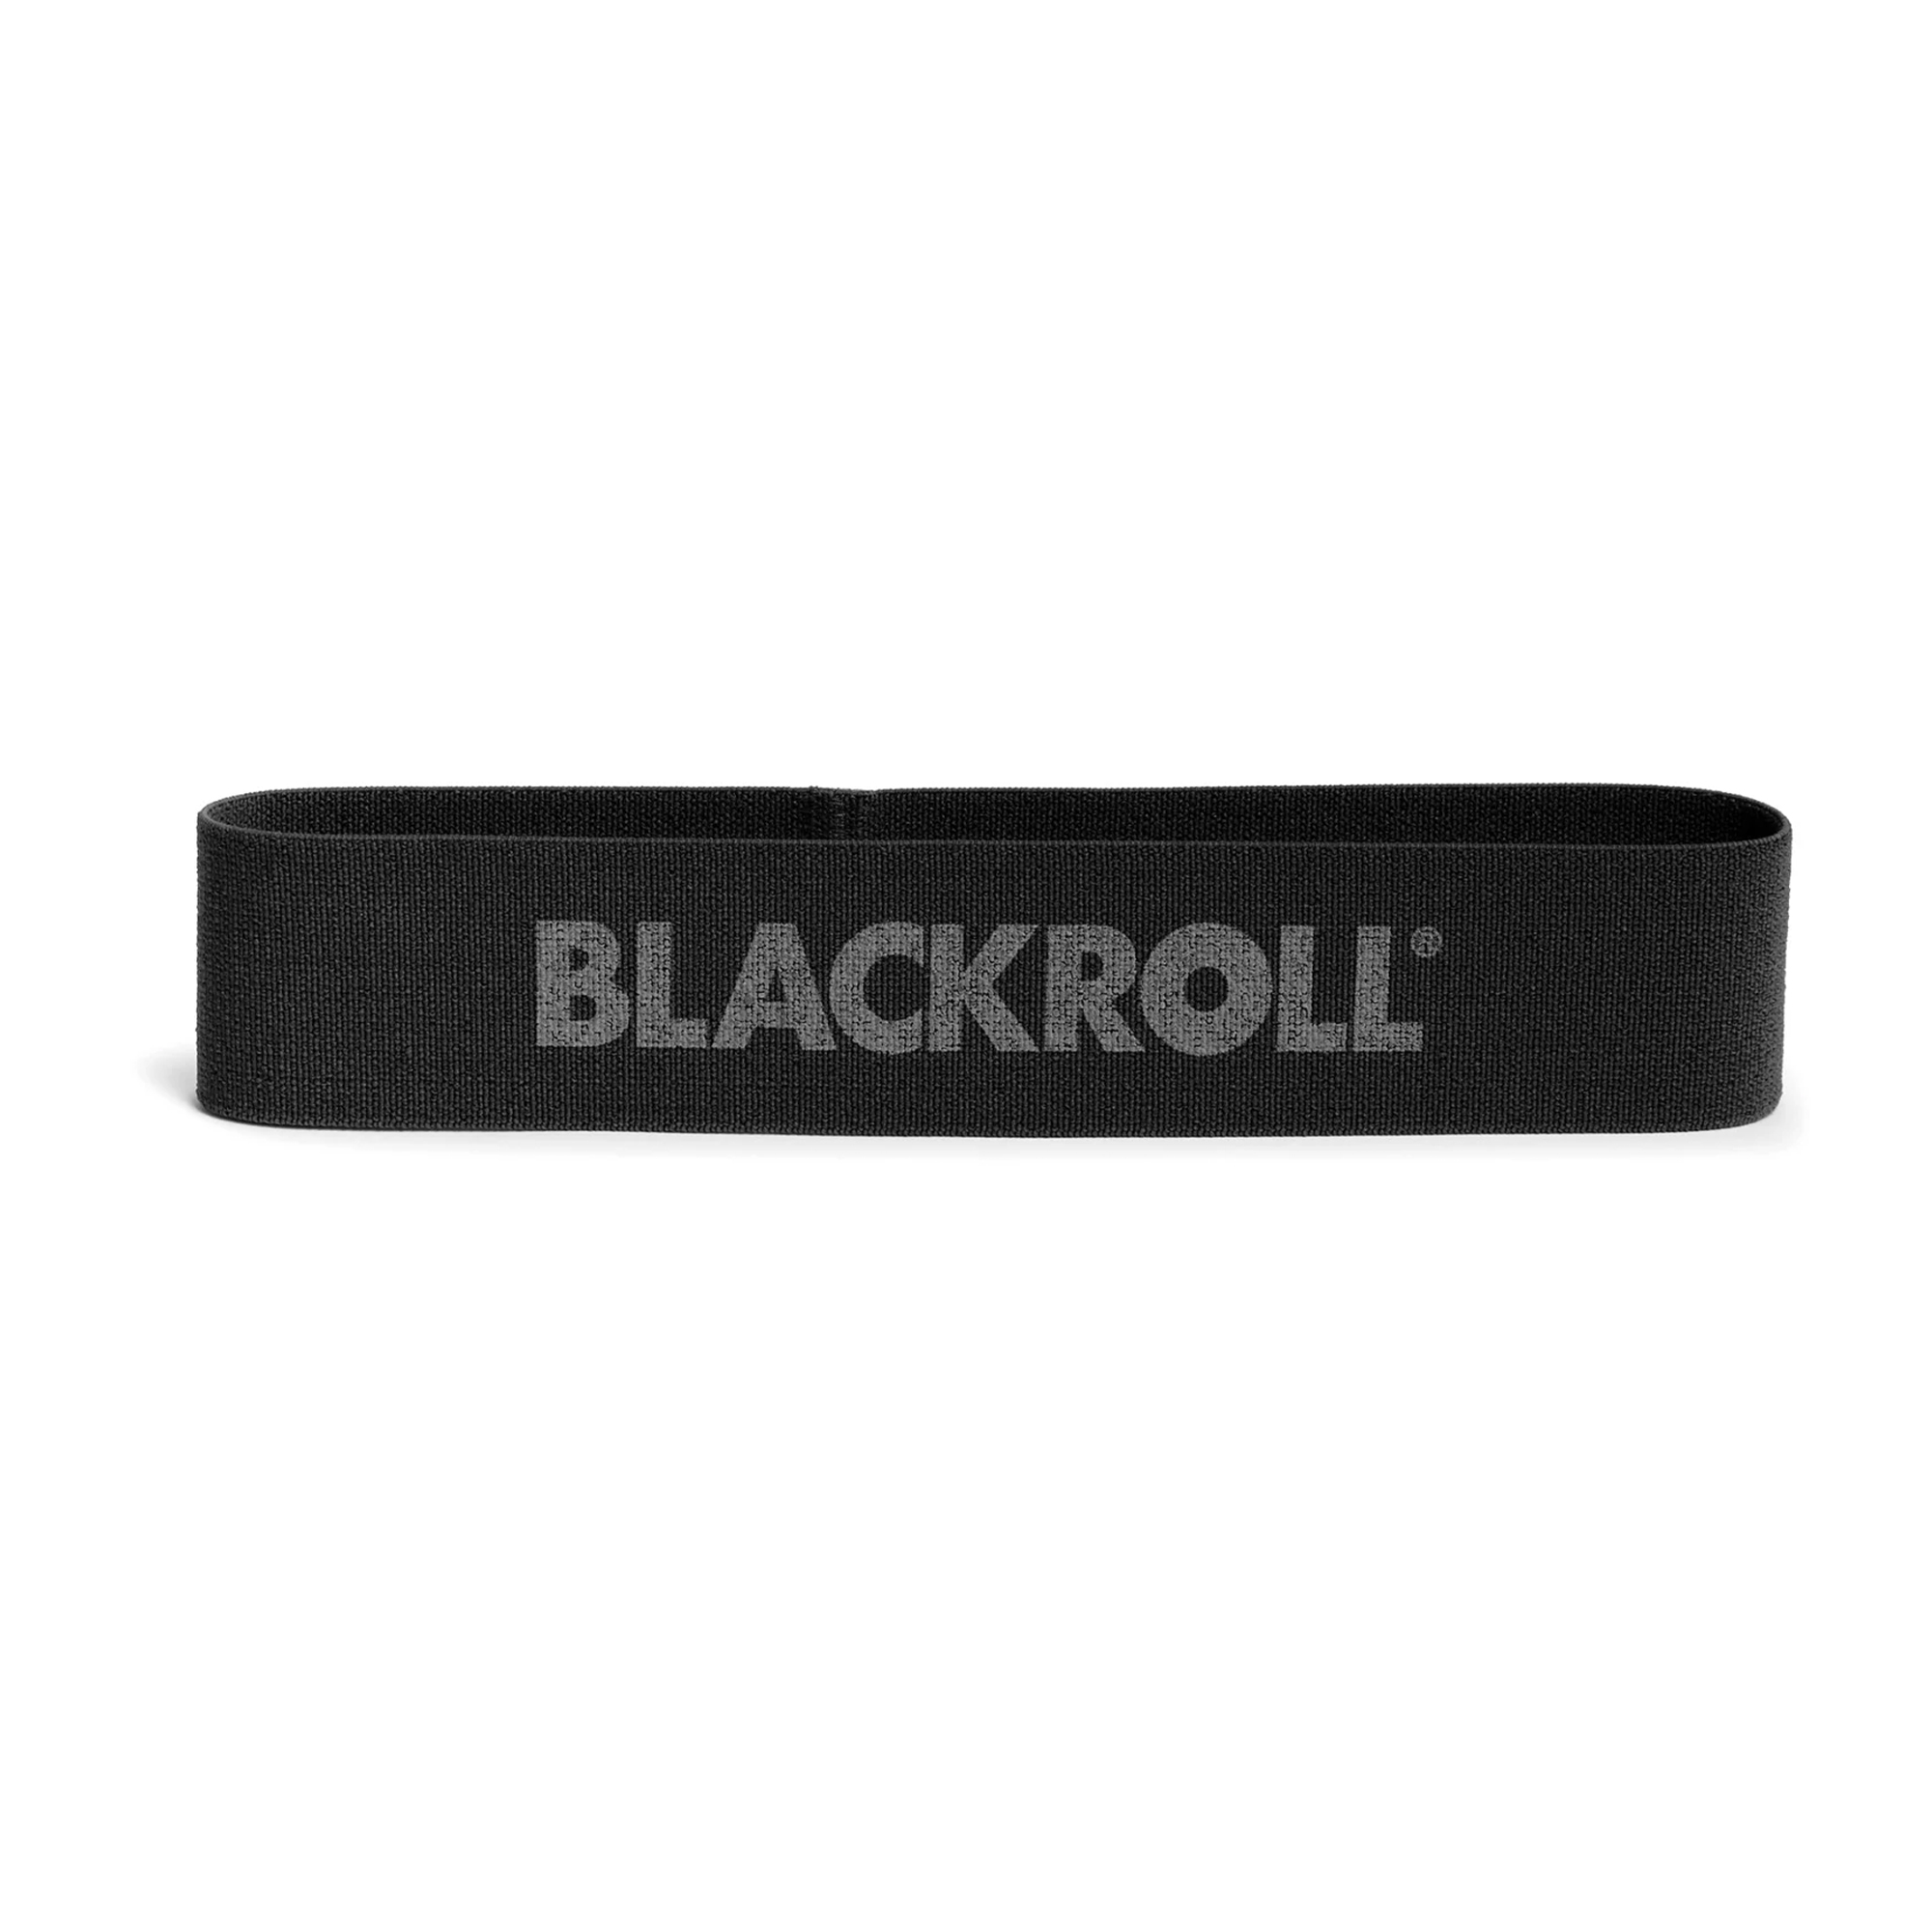 Blackroll Loop Band Træningselastik - Ekstra hård (30 cm) thumbnail